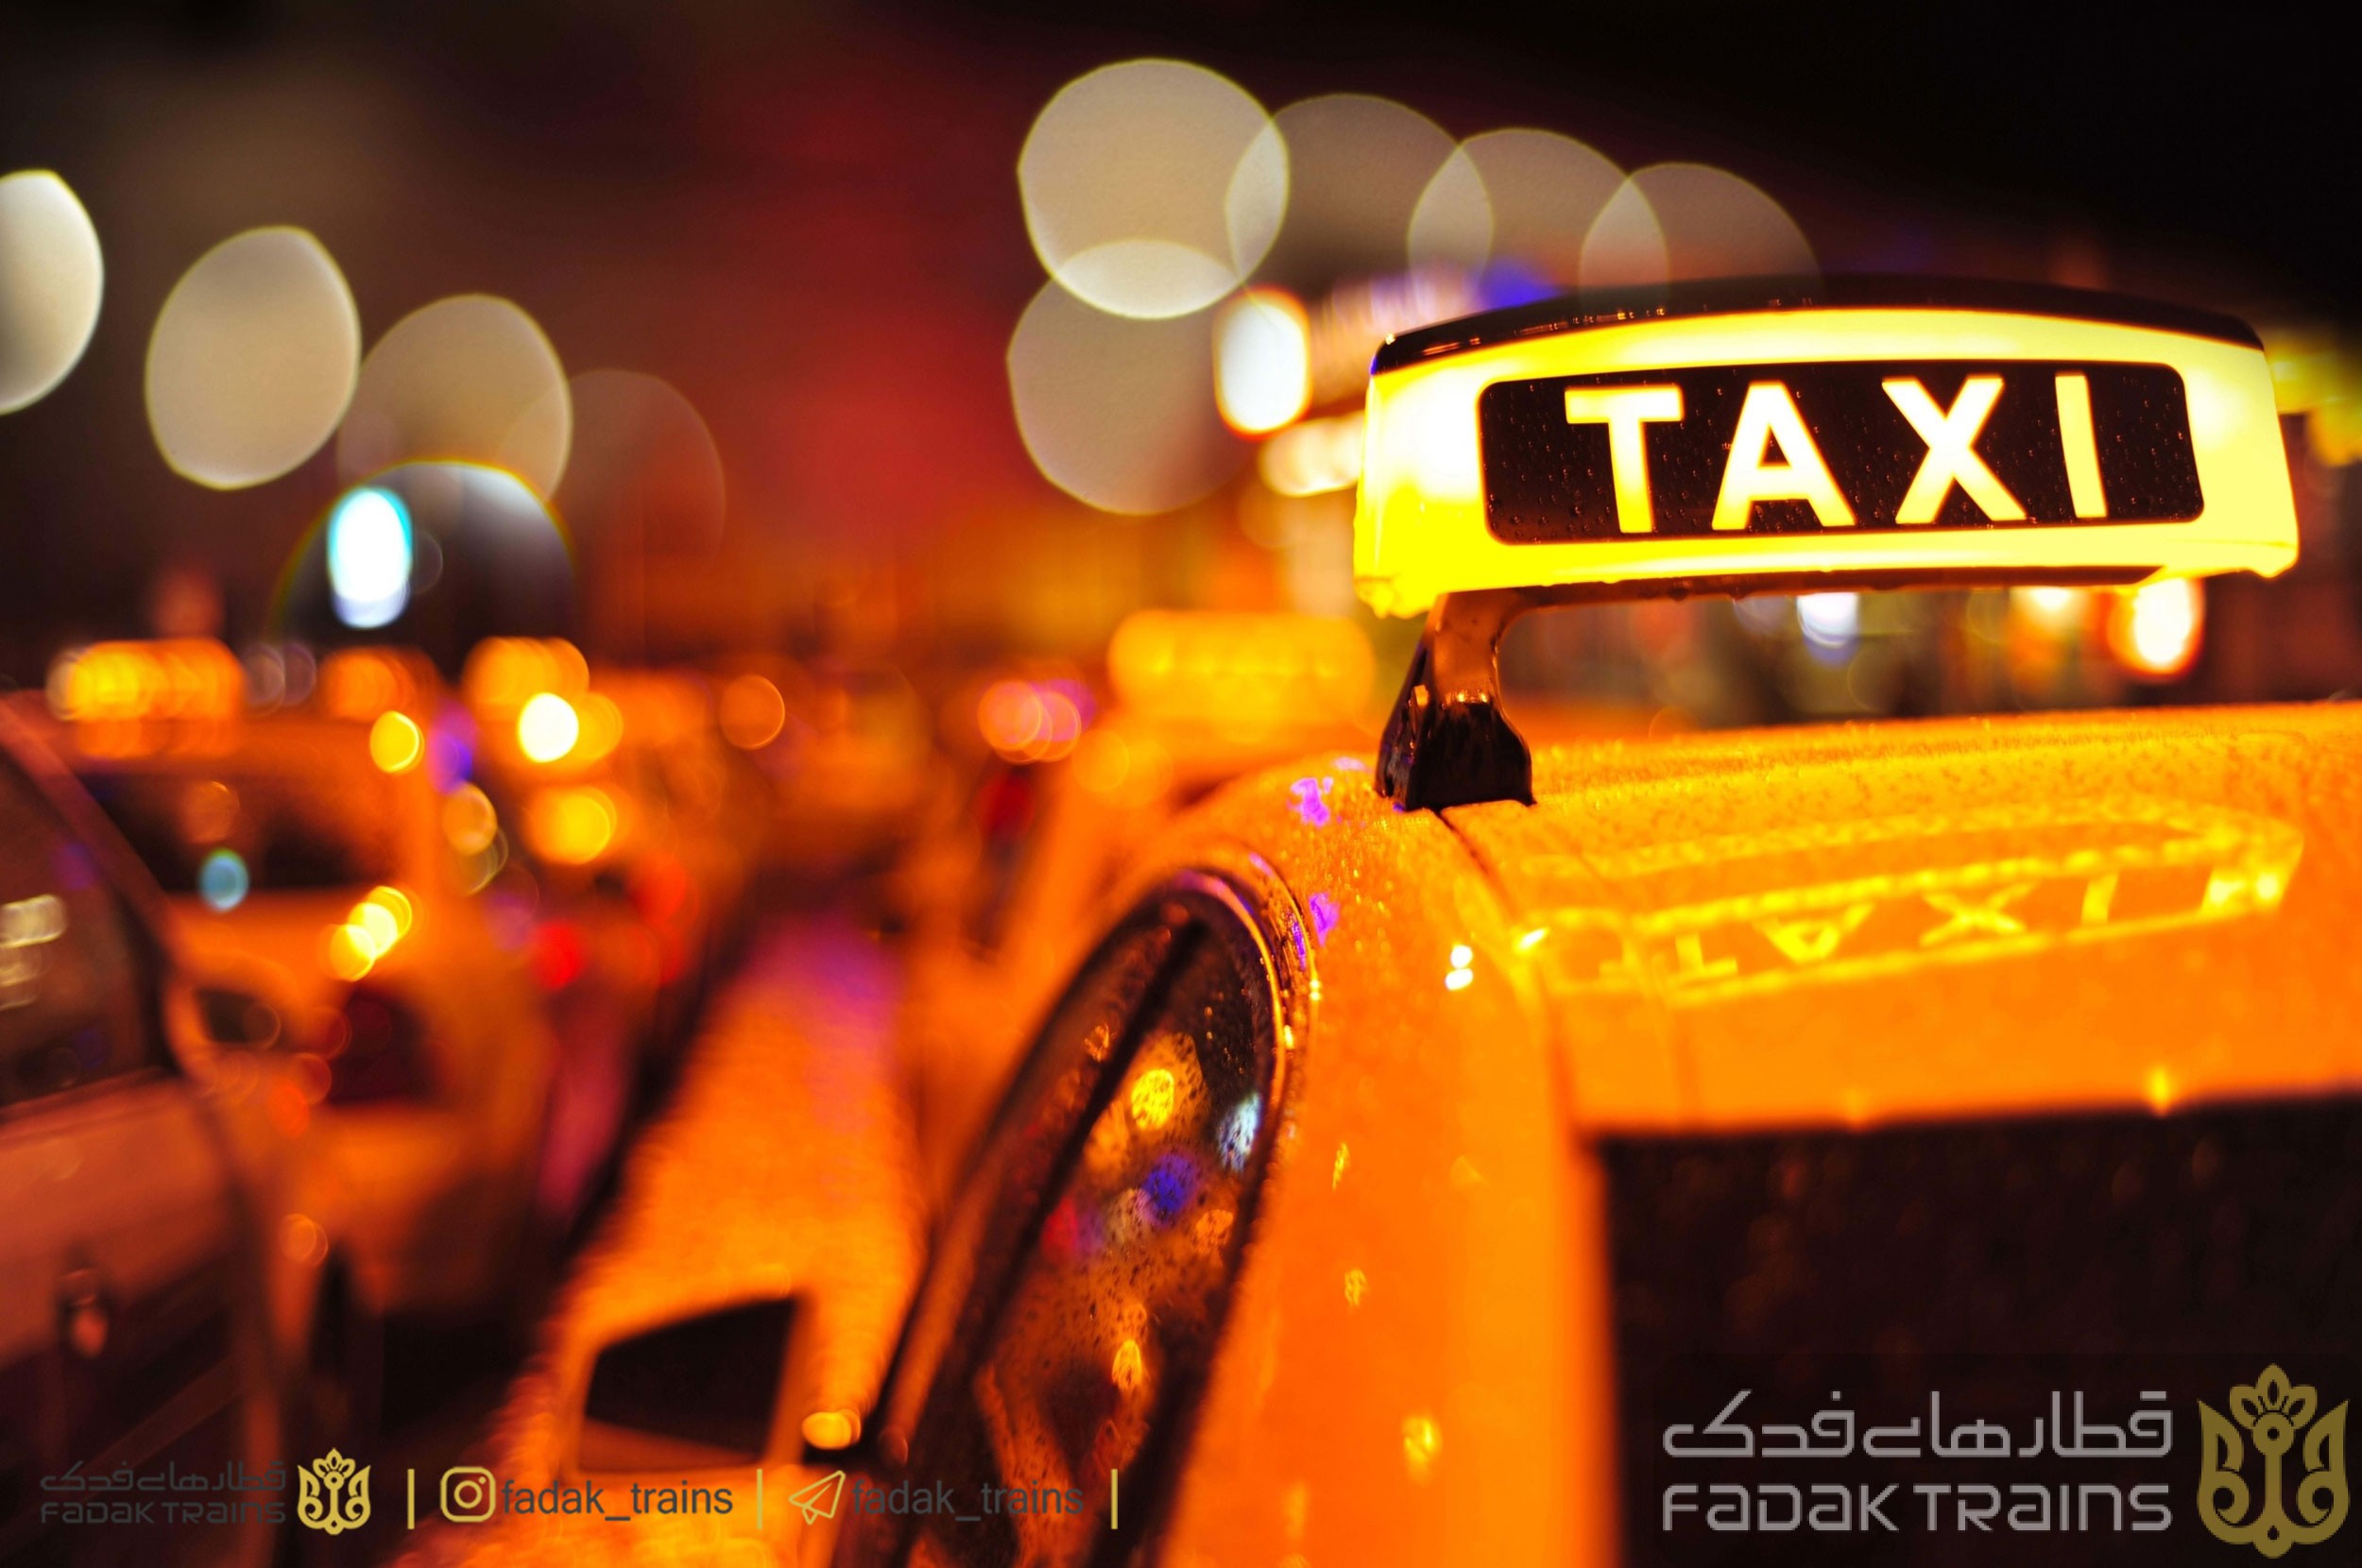 تاکسی اینترنتی در مشهذ